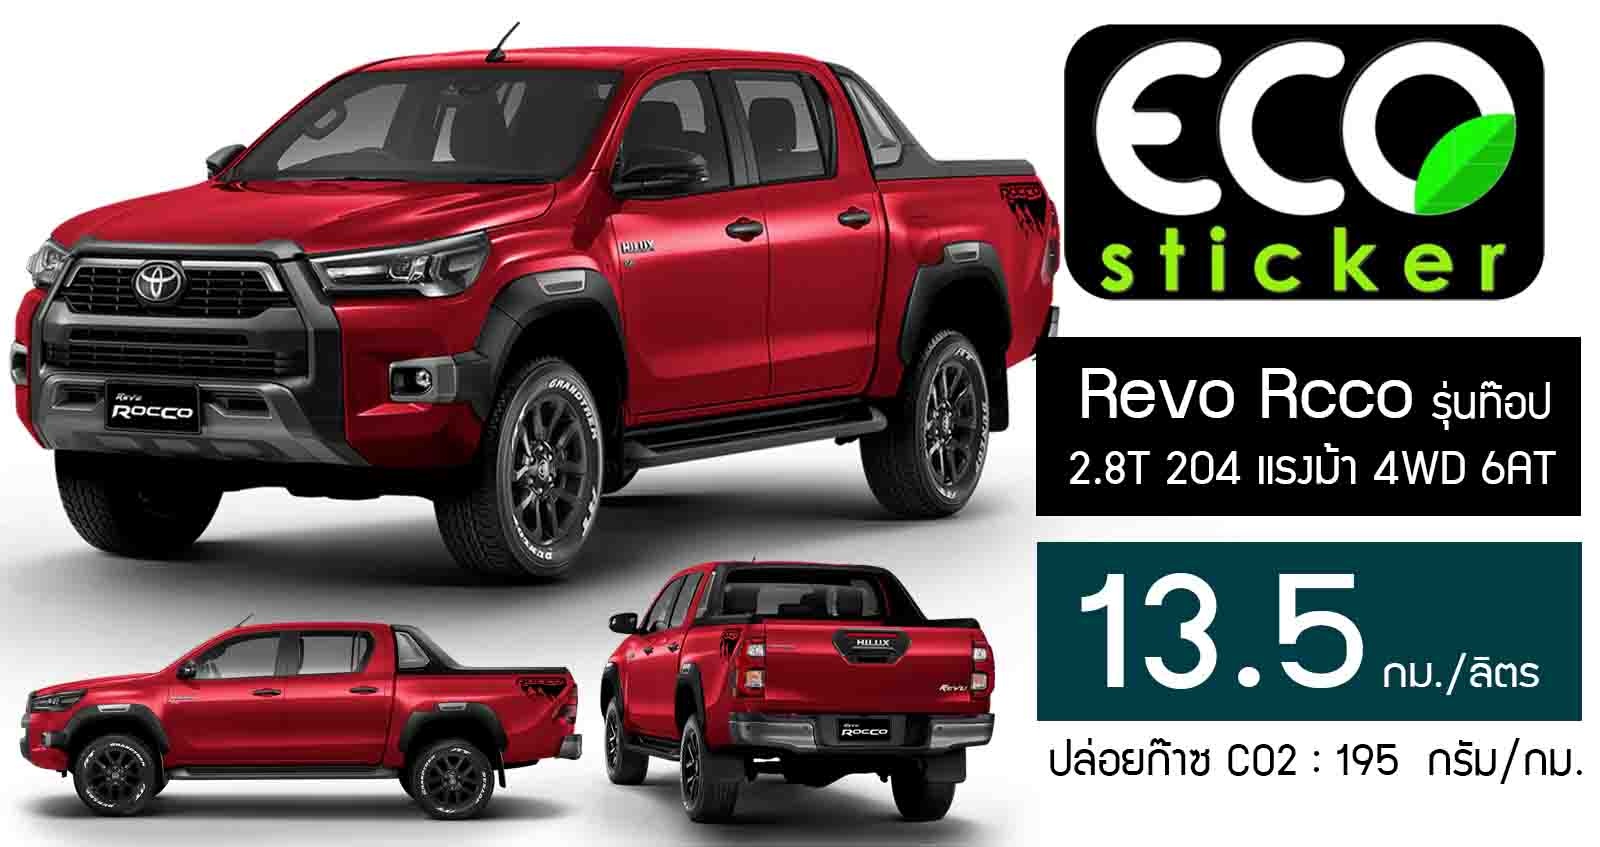 อัตราสิ้นเปลือง 13.5 กม./ลิตร Hilux Revo Rcco 2.8T 4WD 6AT รุ่นท๊อป Eco Sticker